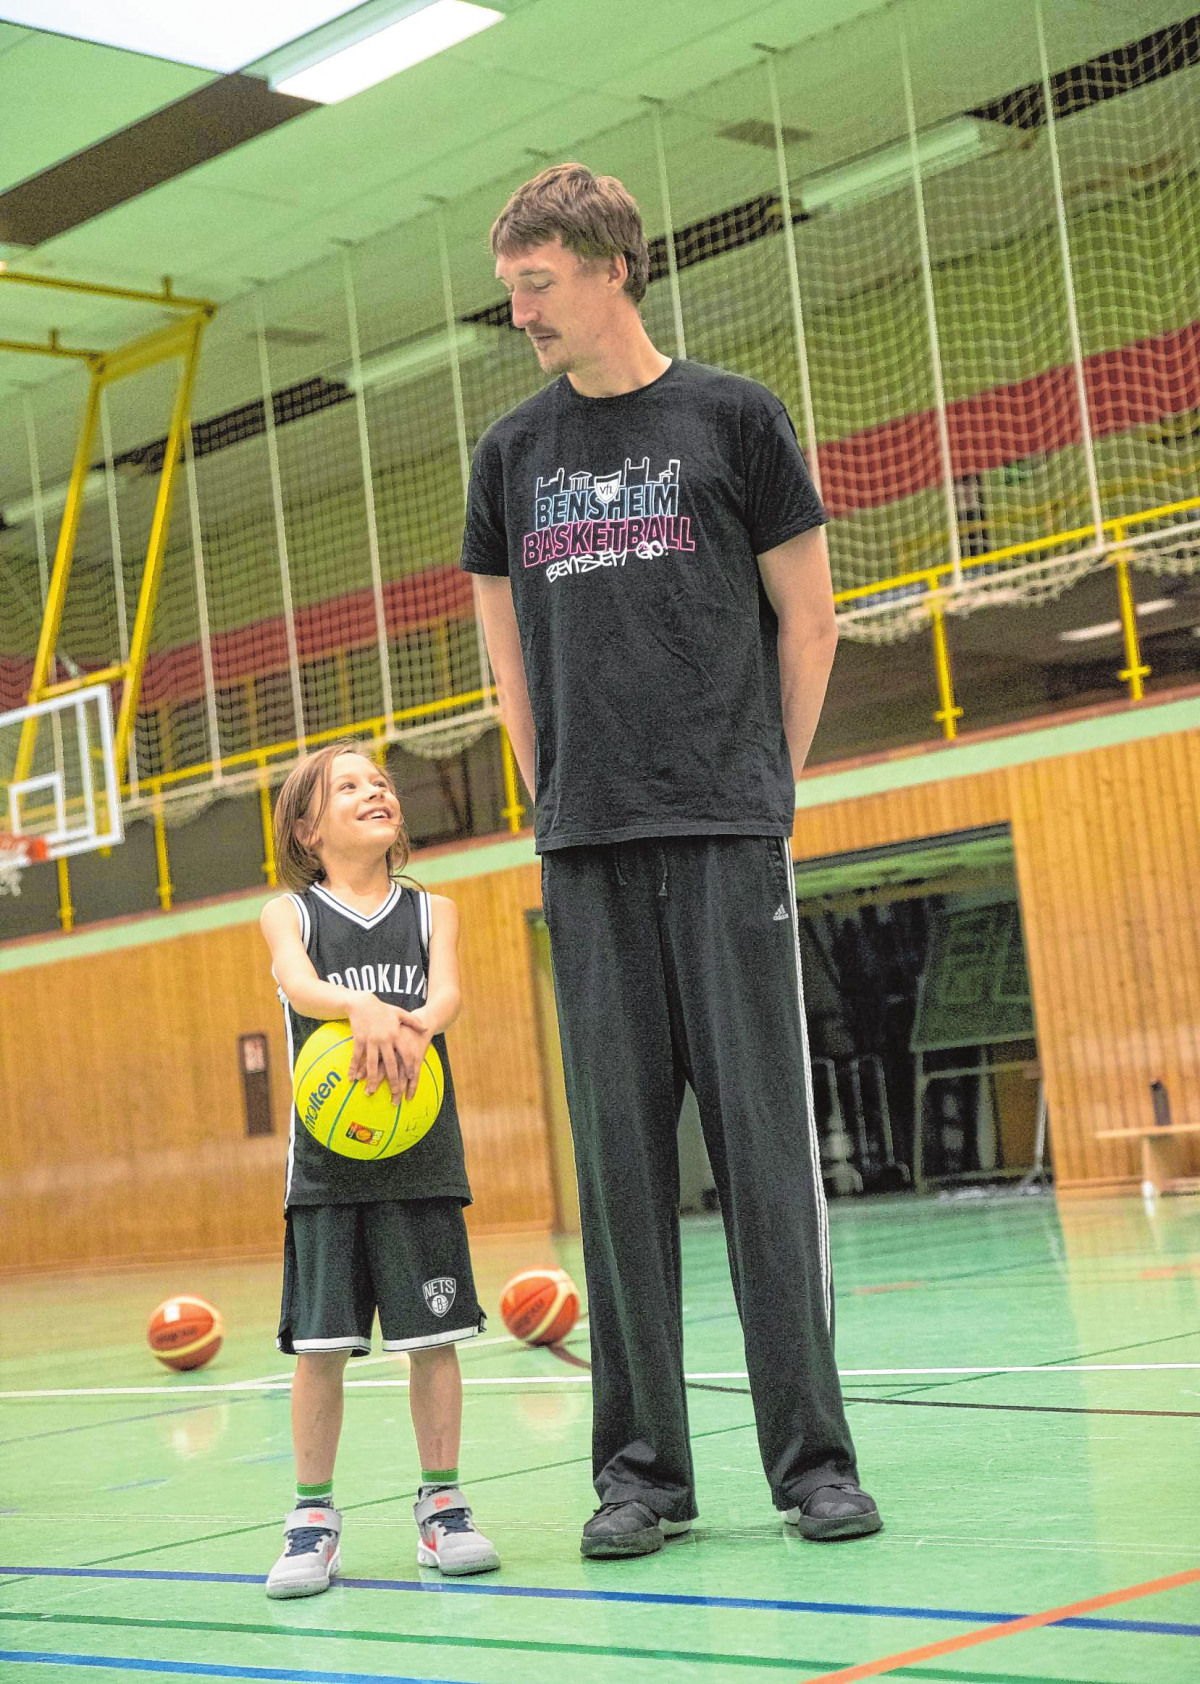 Gewaltiger Größenunterschied: VfL-Spieler Tilmann Isensee (206 cm) und der sieben Jahre alte Nachwuchsspieler Carlo Hegenbarth (129 cm). | Bild: Thomas Neu